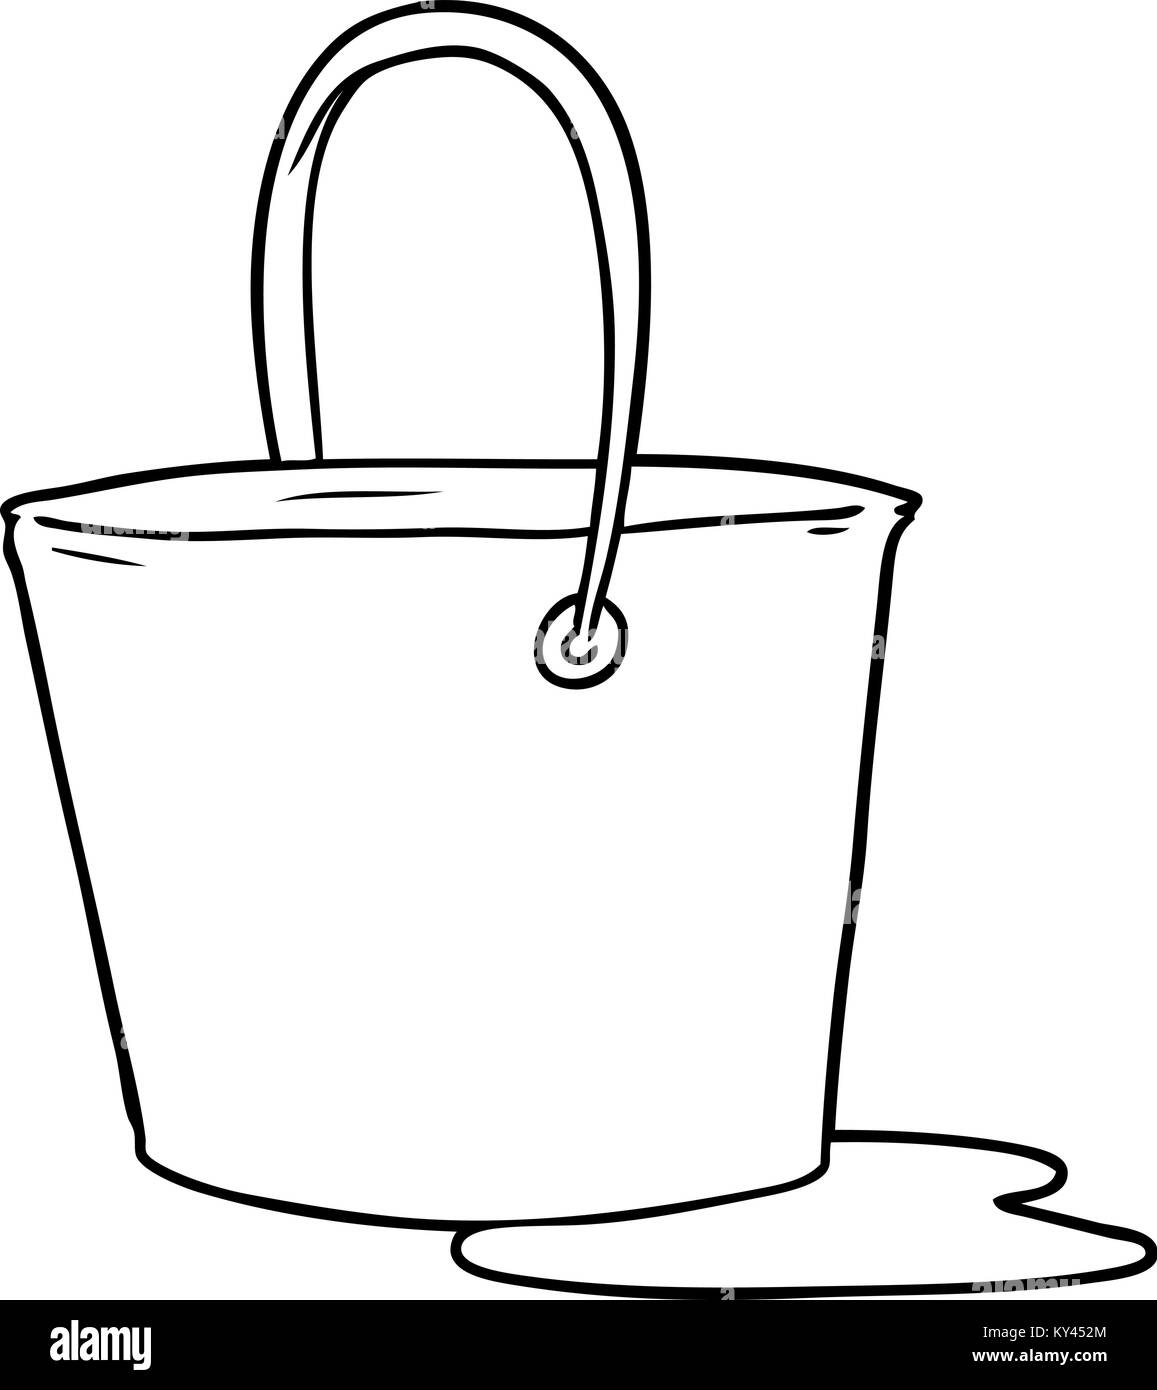 cartoon bucket of water Stock Vector Image & Art - Alamy